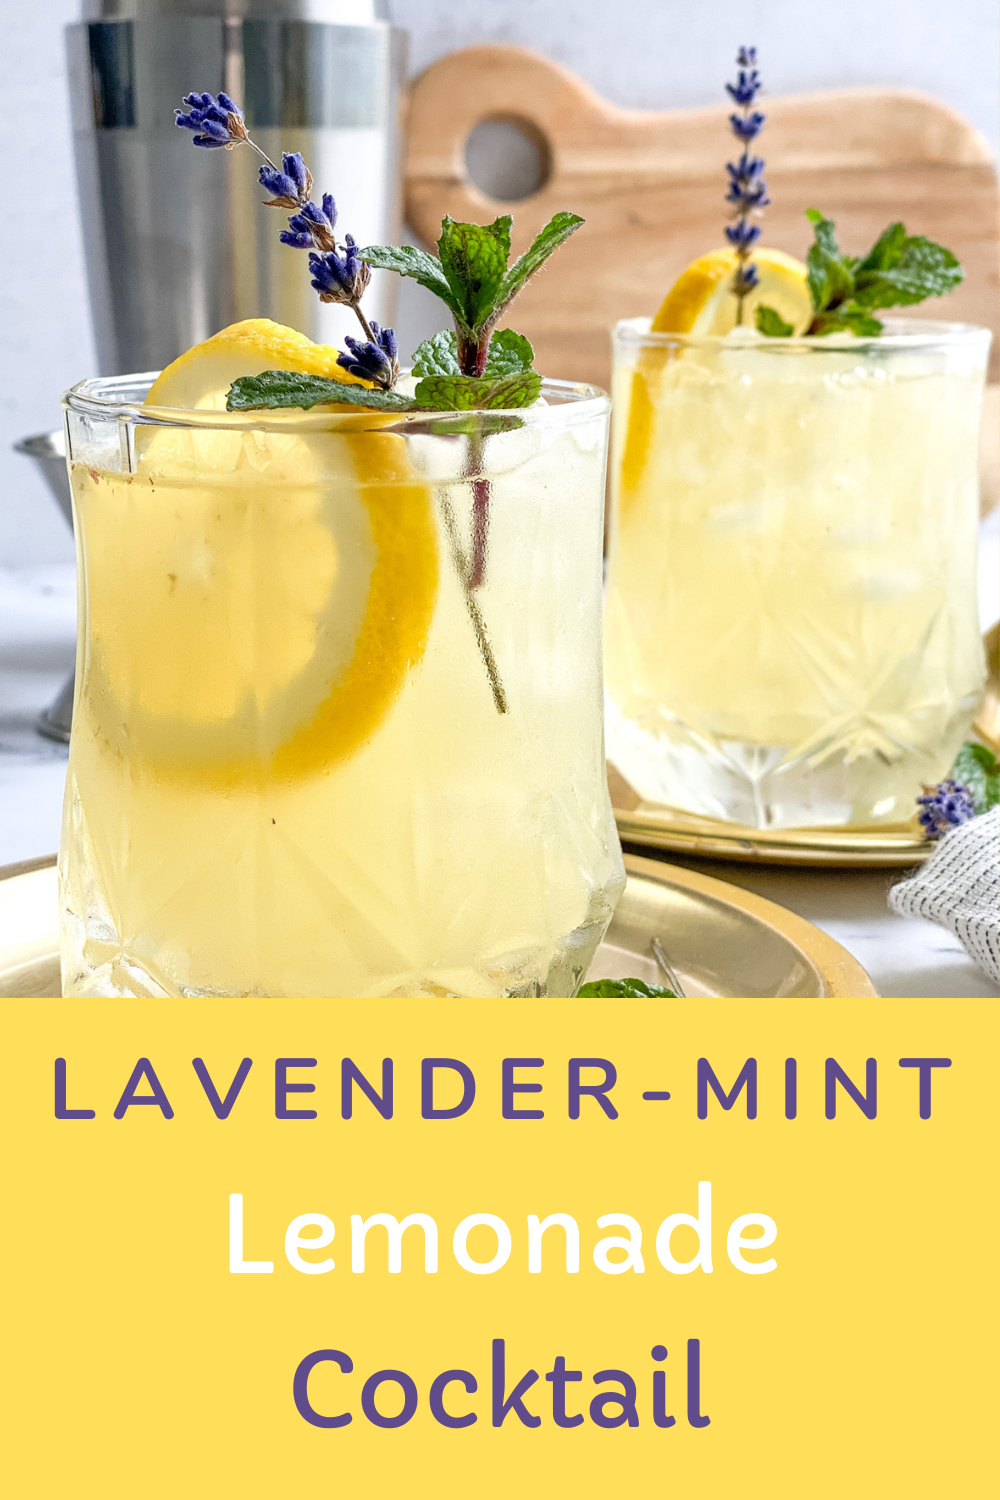 Blog - Norwood Lavender